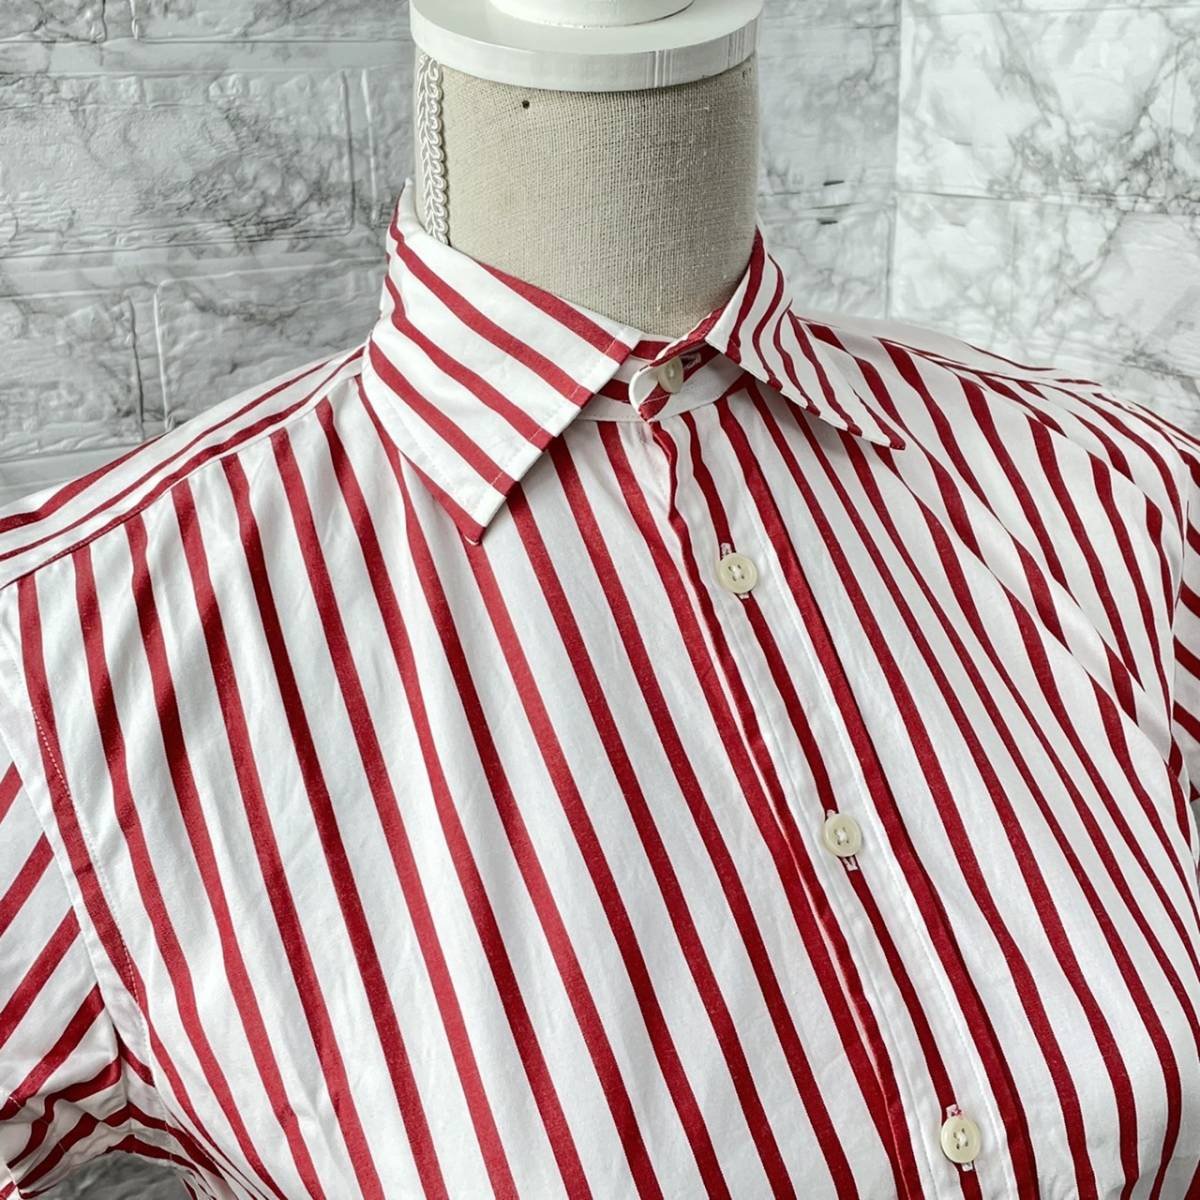 RALPH LAUREN ラルフローレン レディース 4 M程度 スリムフィット 半袖シャツ 白赤 ストライプ柄 綿 コットン カジュアル 古着の画像5